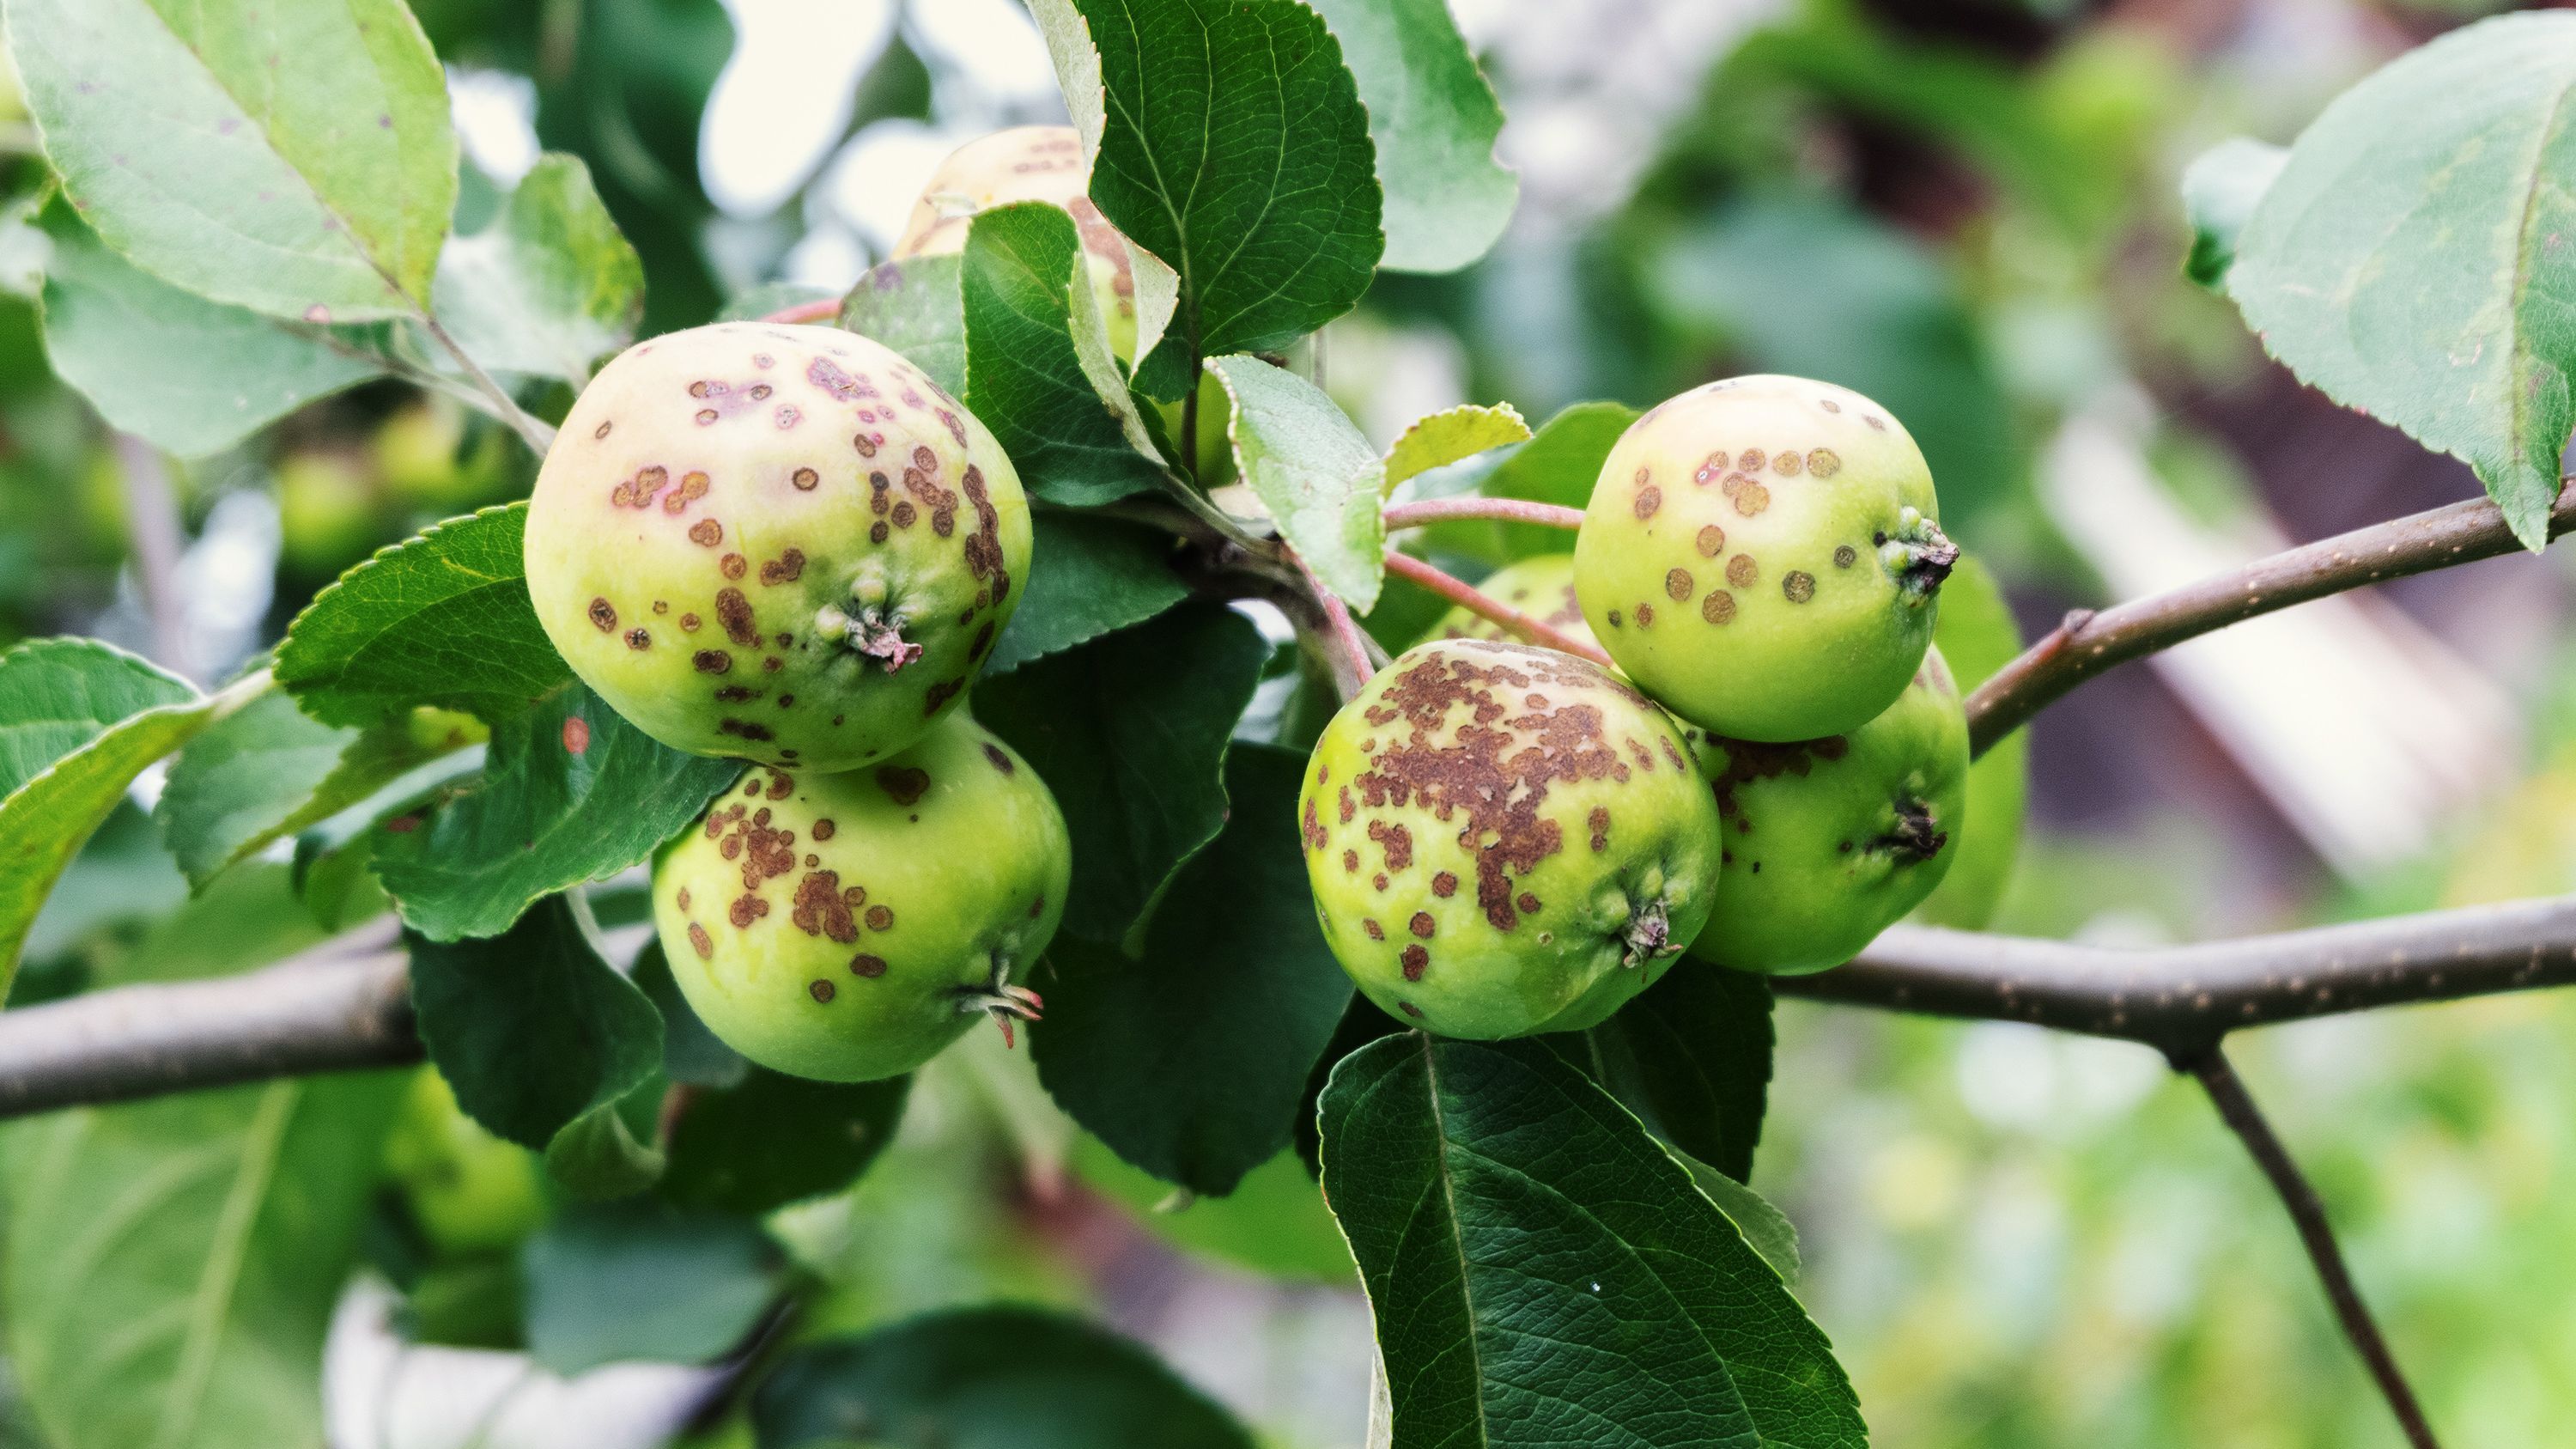 6 conseils pour traiter les arbres fruitiers en hiver